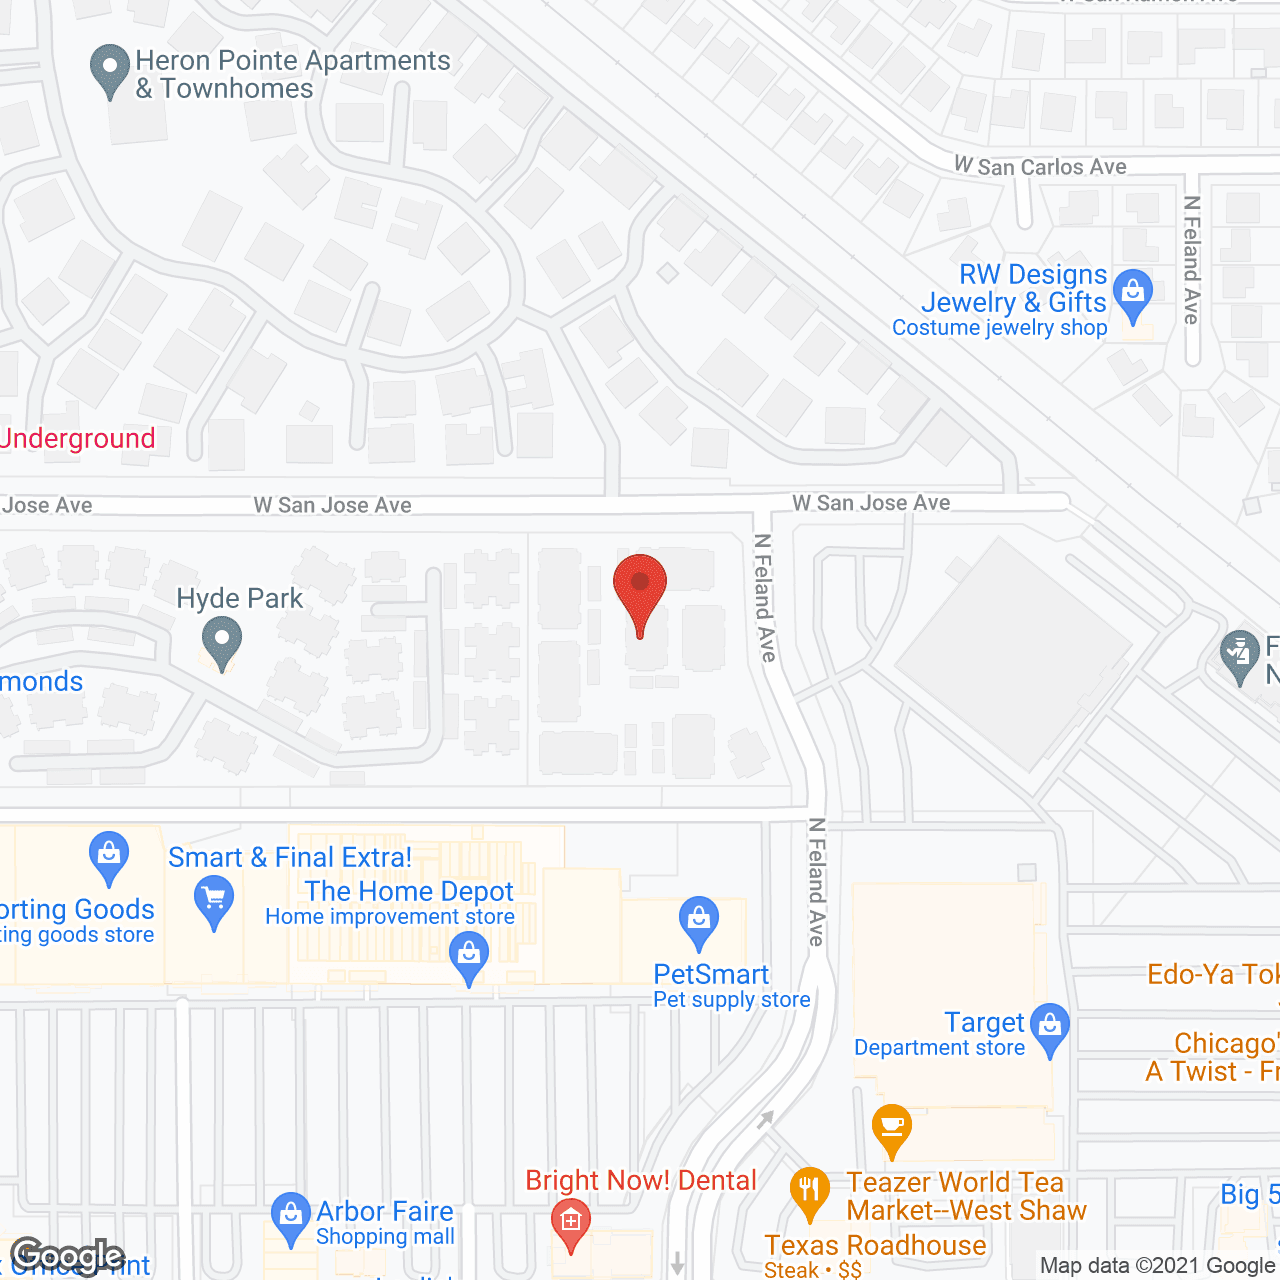 Arbor Faire Apartments in google map